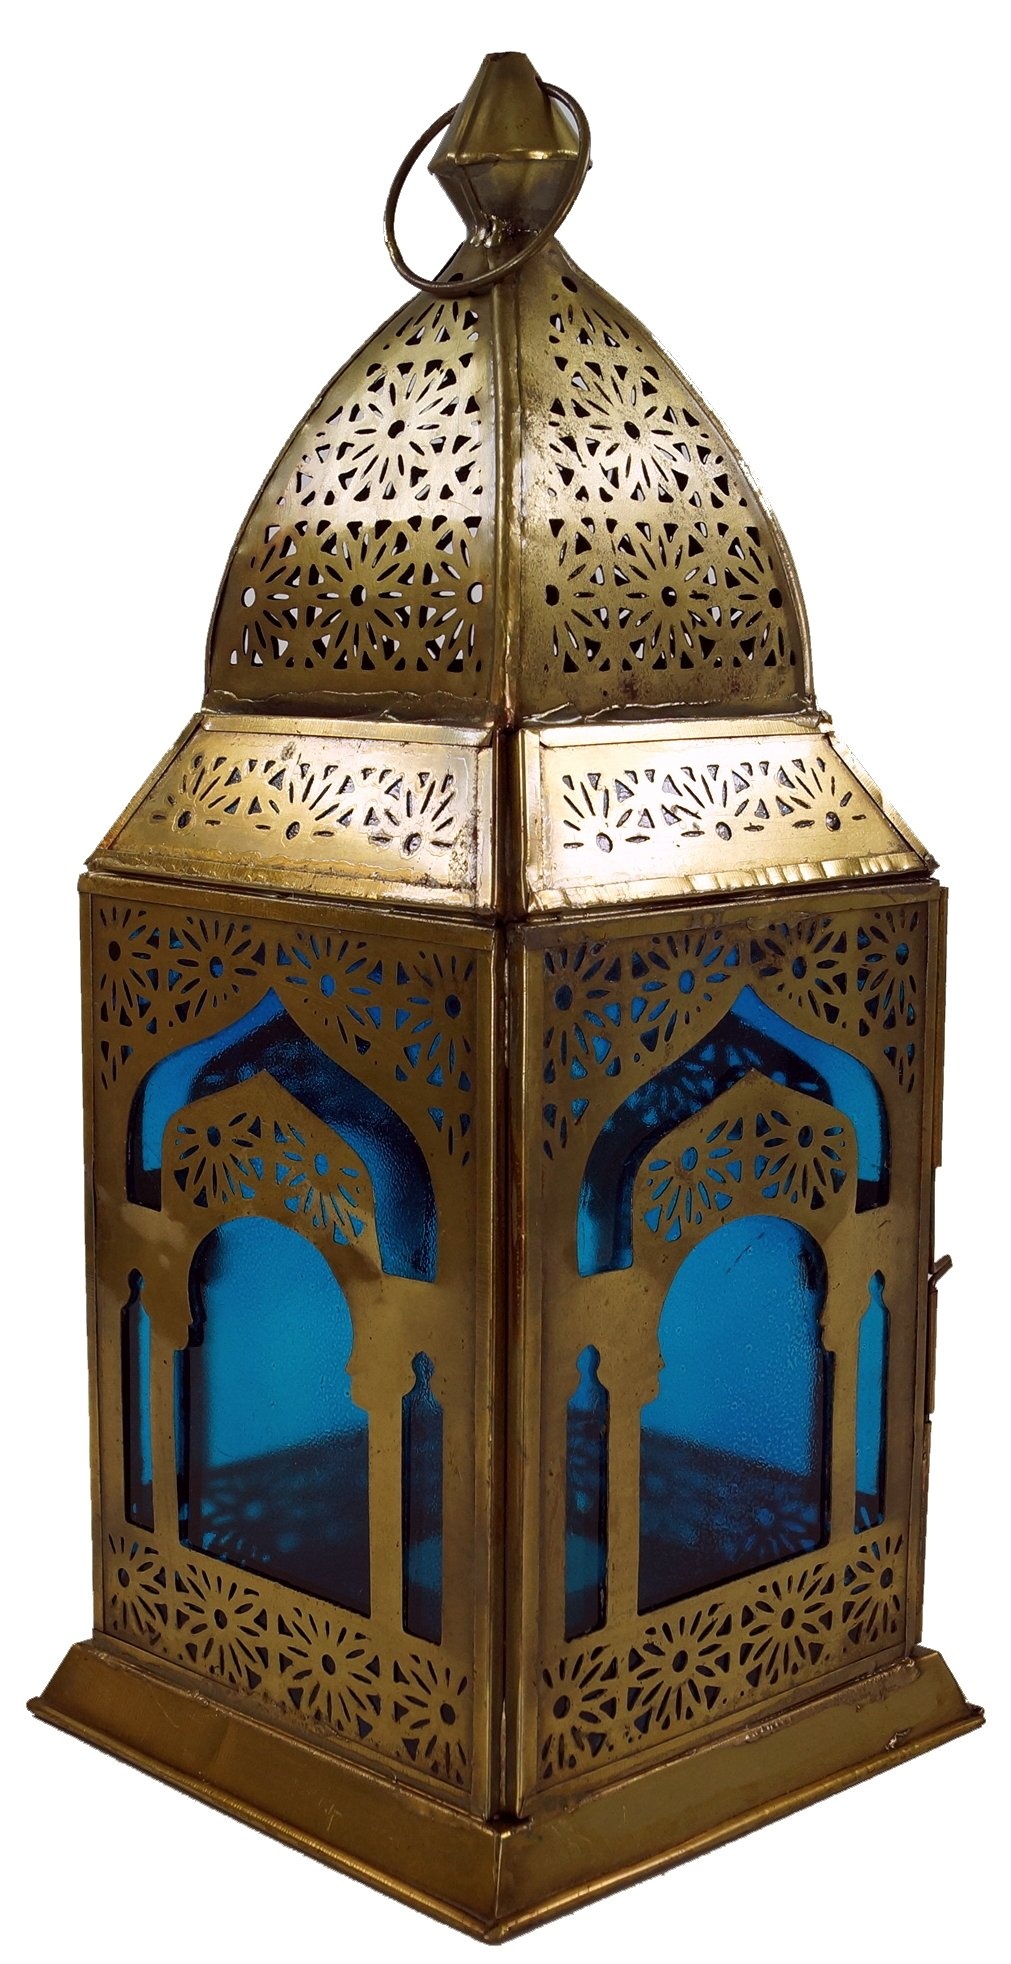 GURU SHOP Orientalische Metall/Glas Laterne in Marrokanischem Design, Windlicht, Türkis, Farbe: Türkis, 30x13x13 cm, Orientalische Laternen